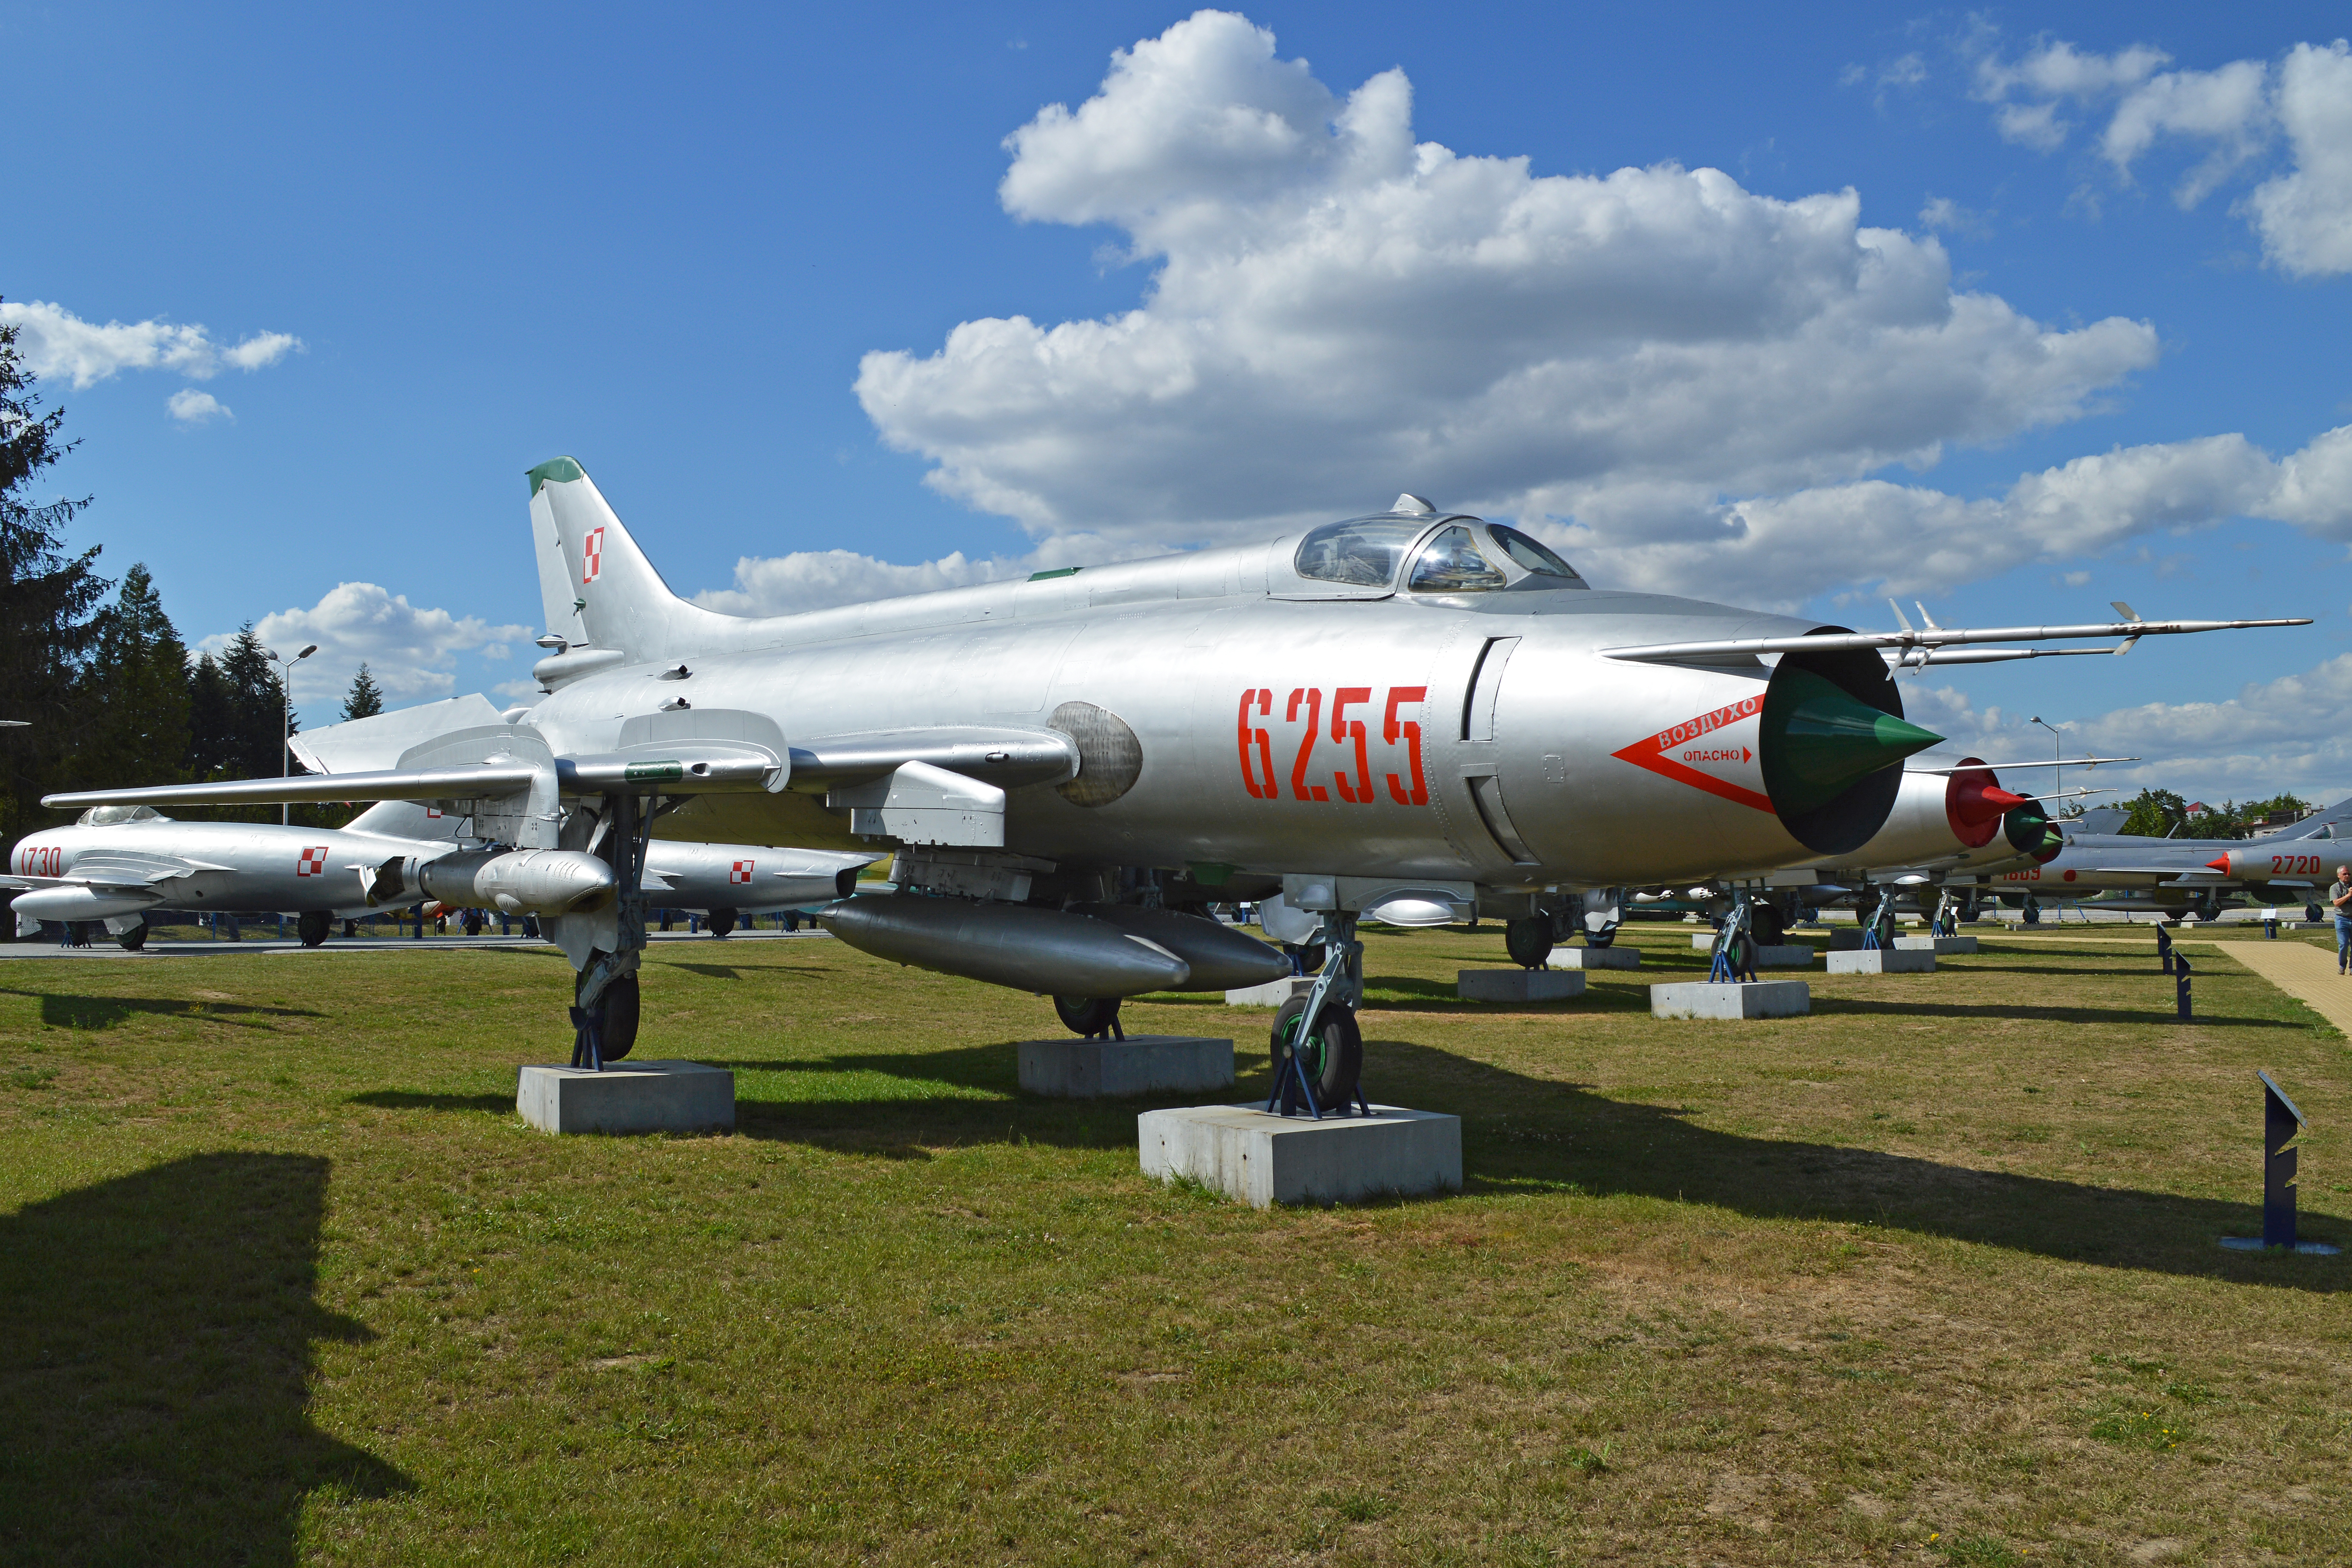 Sukhoi_Su-20R_'6255'_(13310198425).jpg